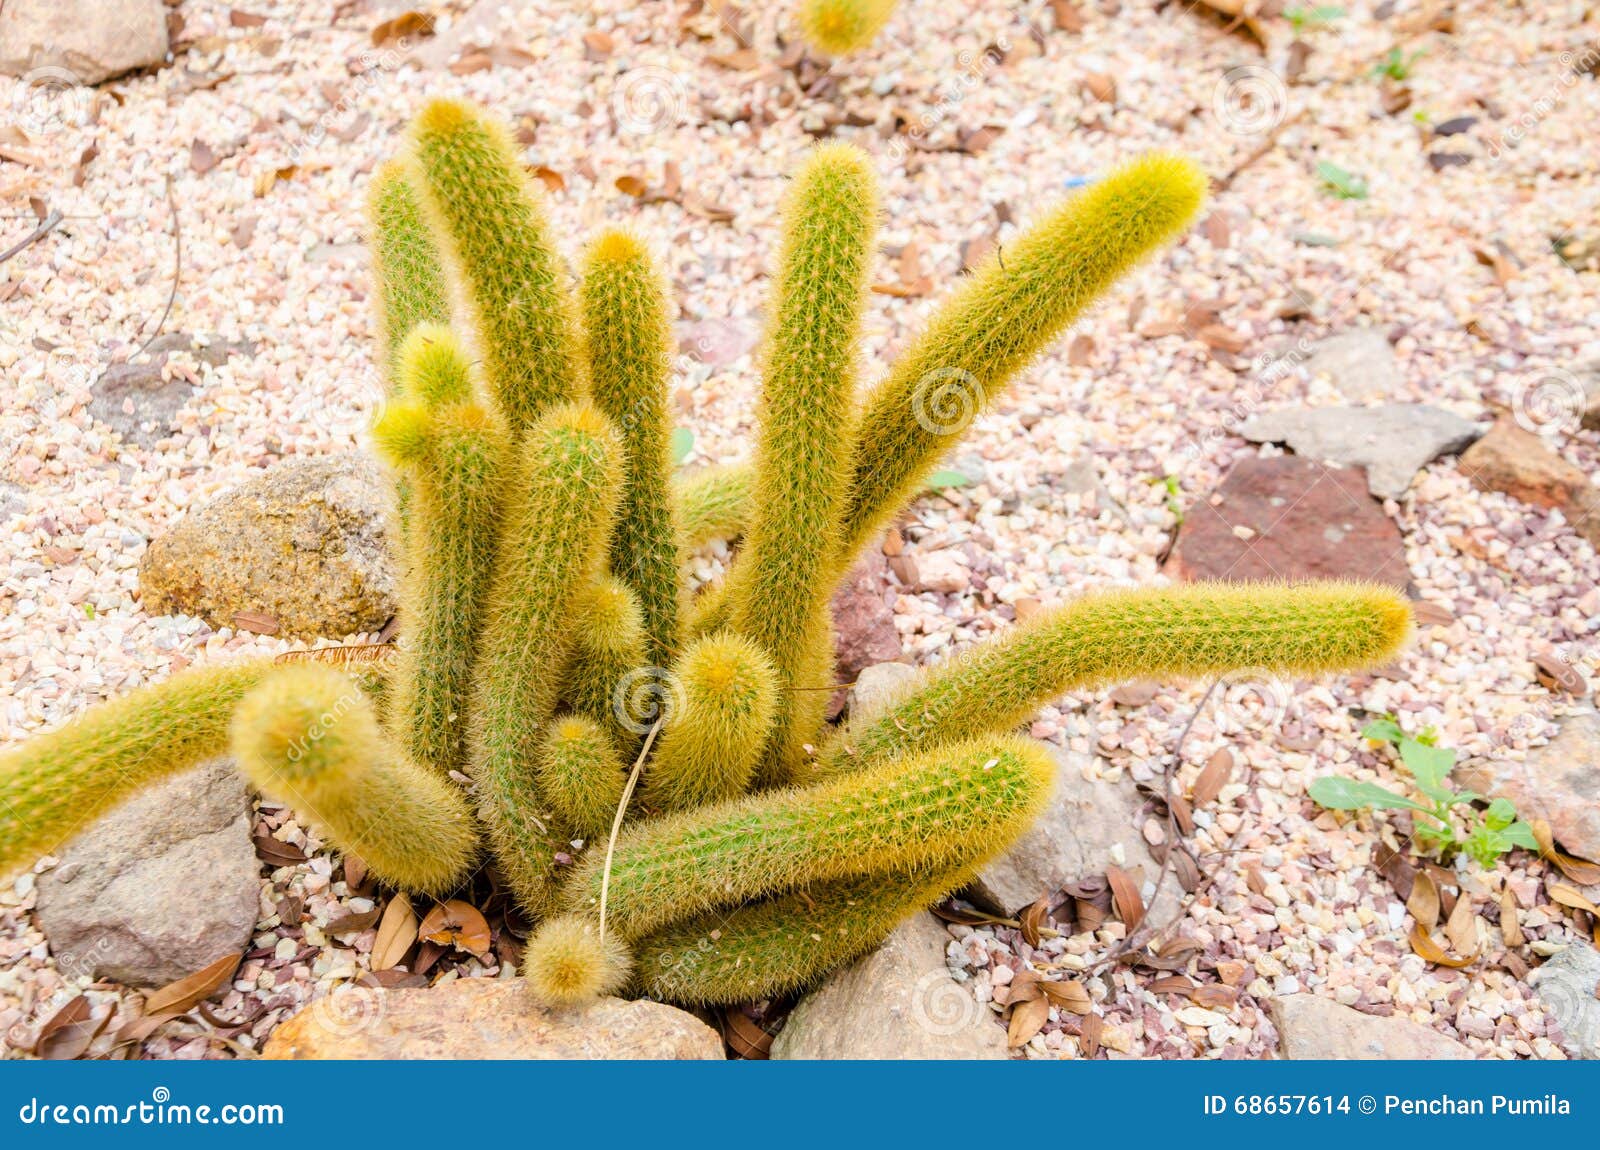 mammillaria elongate cactus.